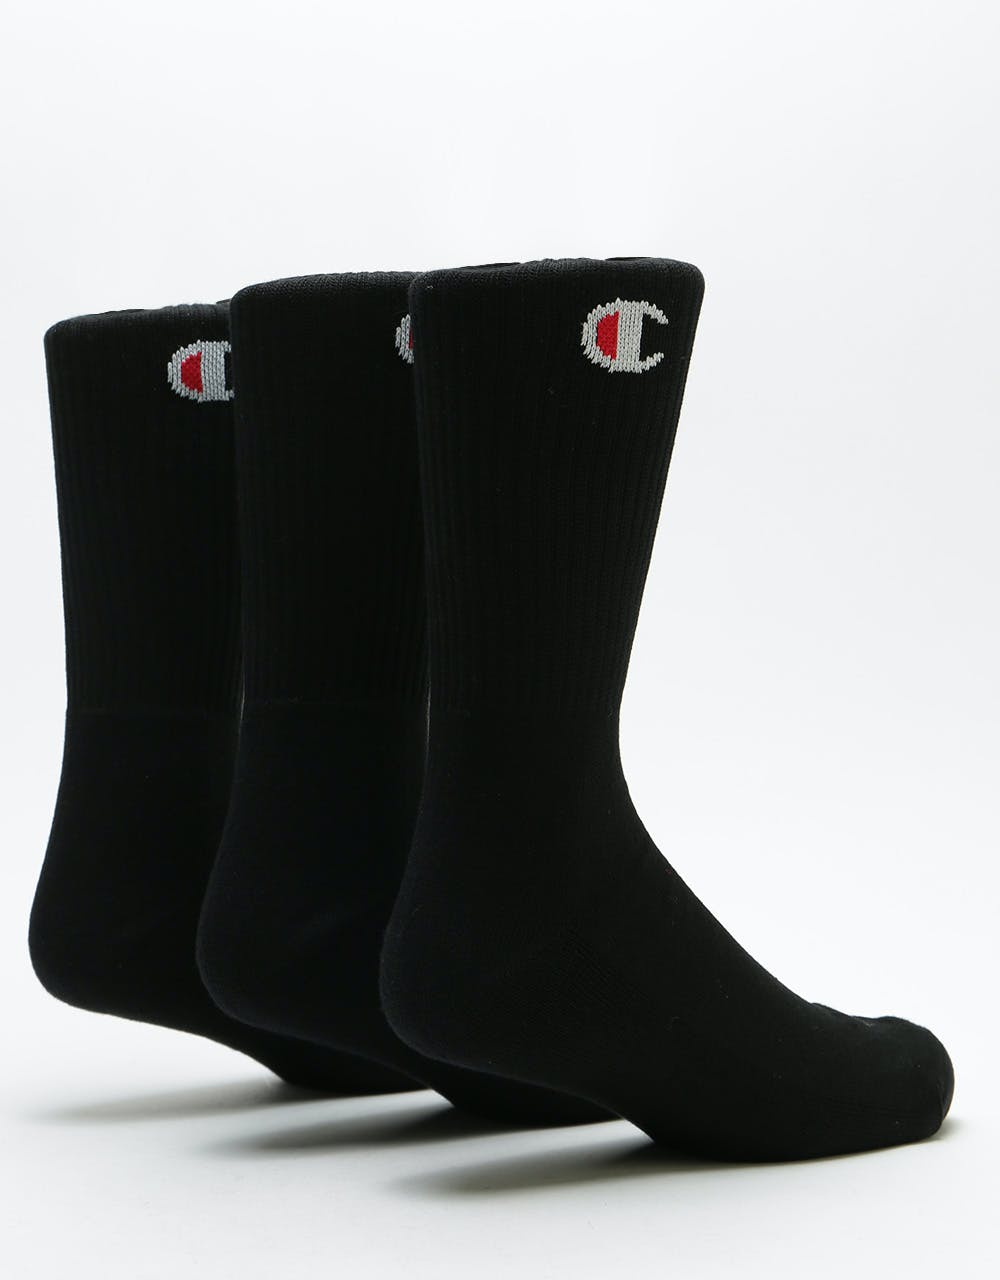 Champion C Logo 3 Pack Socks (UK6-8) - Black